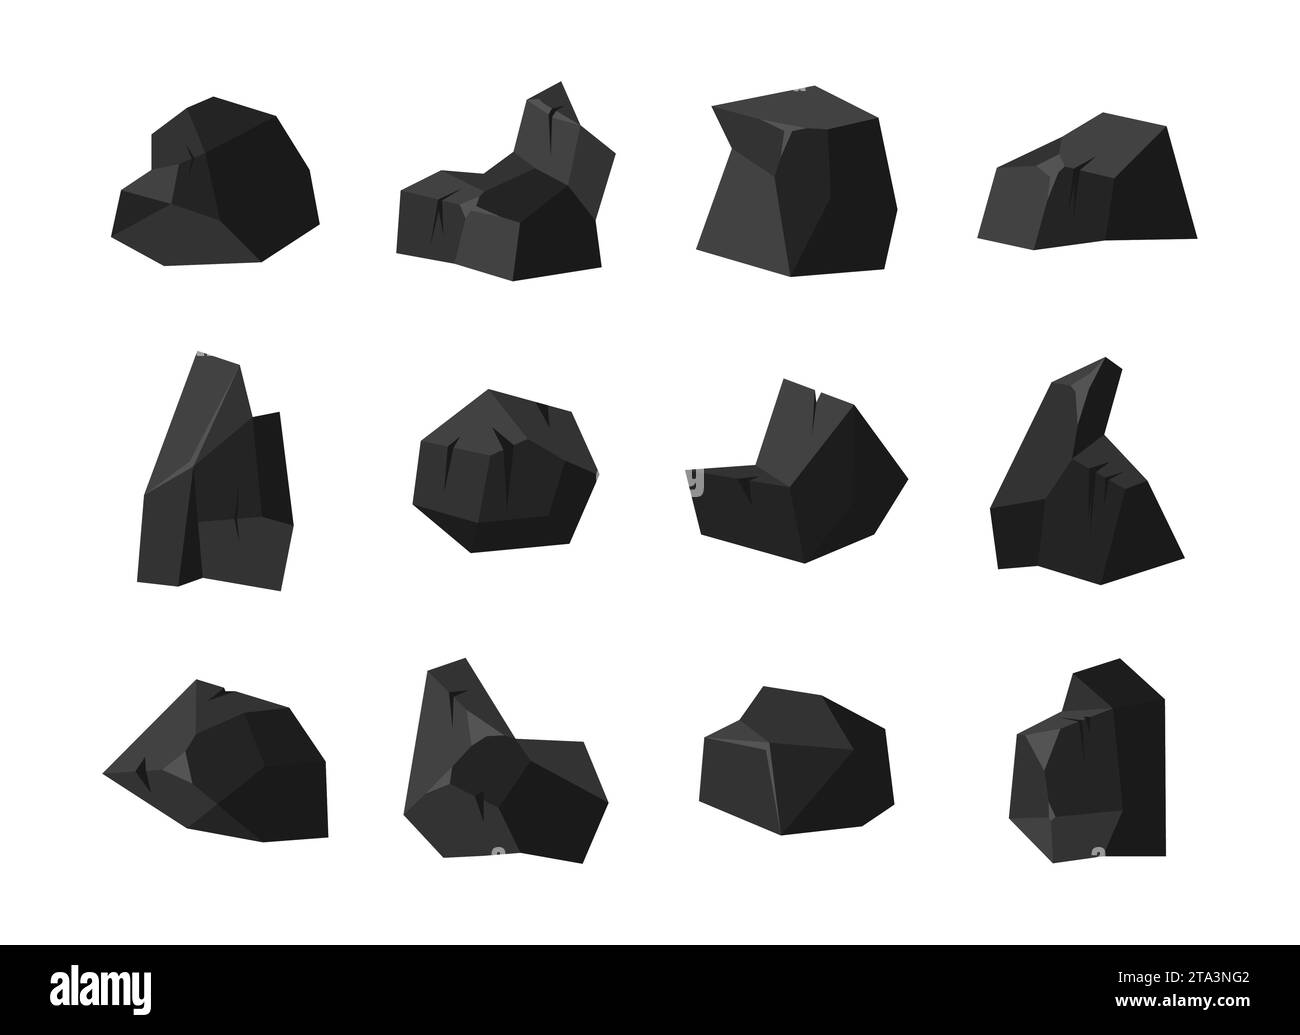 Un ensemble de morceaux de charbon noir de pierre fossile de diverses formes avec différents éclairages de la surface. Charbon isolé sur fond blanc. Illustration de Vecteur